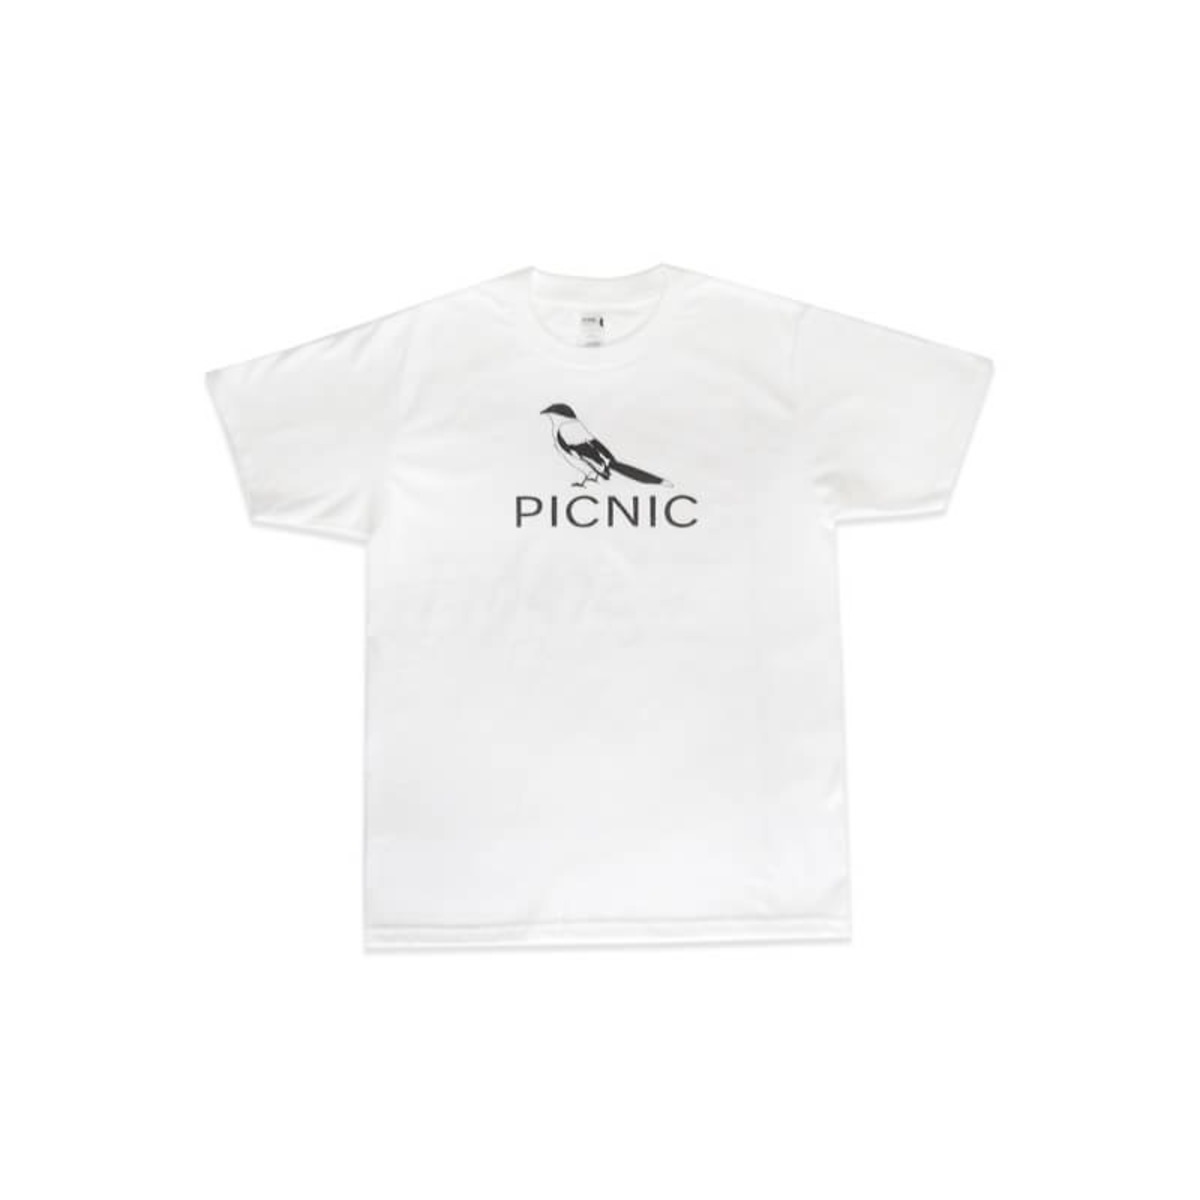 いでたつひろ" 「PICNIC-とり」 Tシャツ | 2F